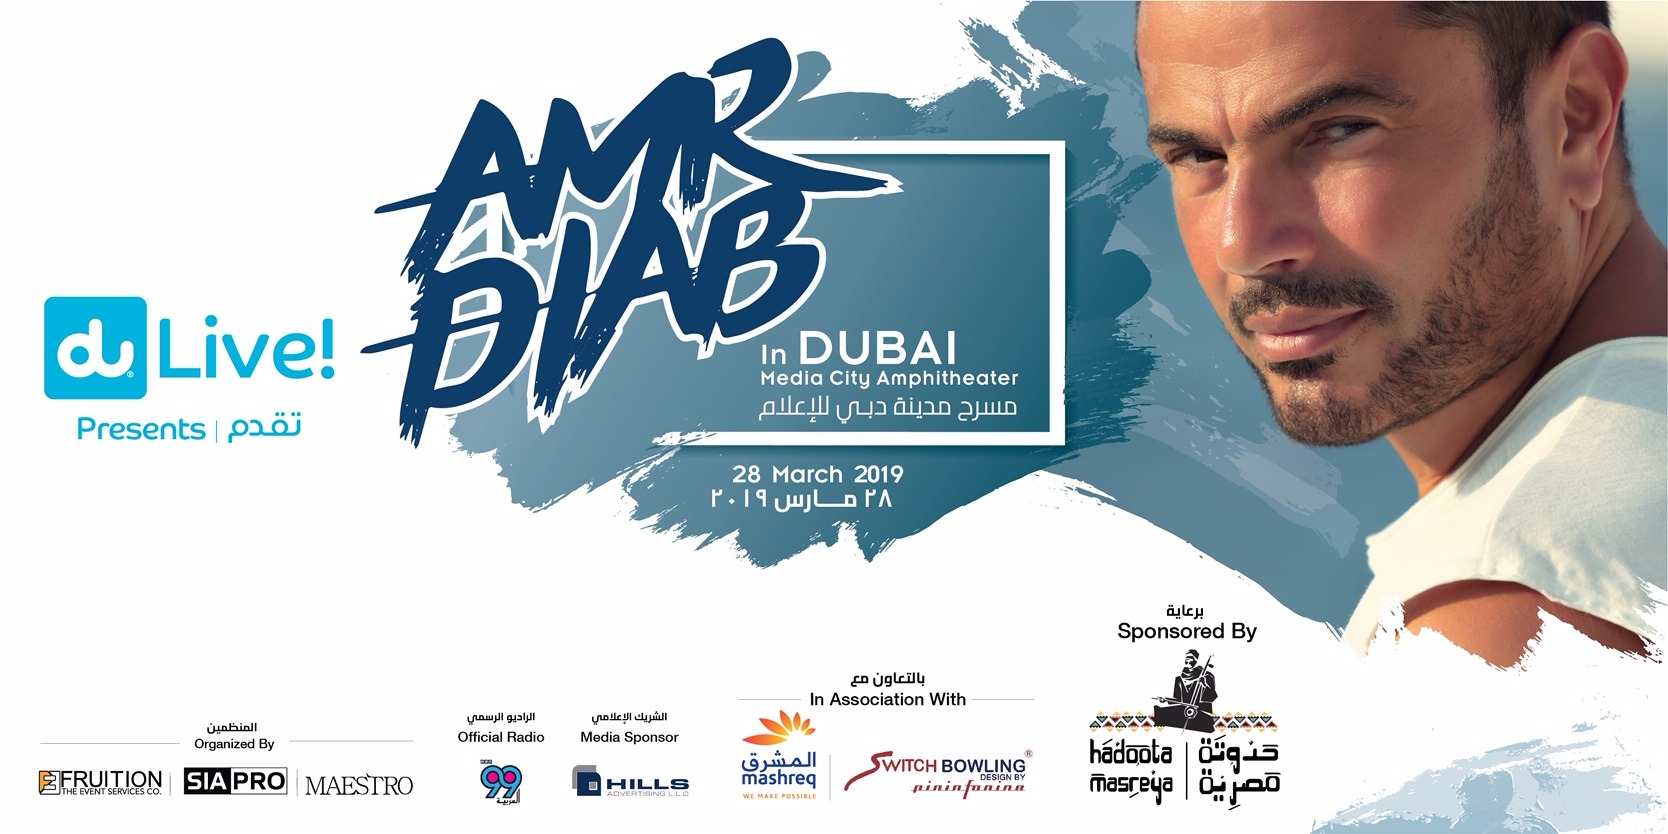 Amr Diab Live Concert - Coming Soon in UAE